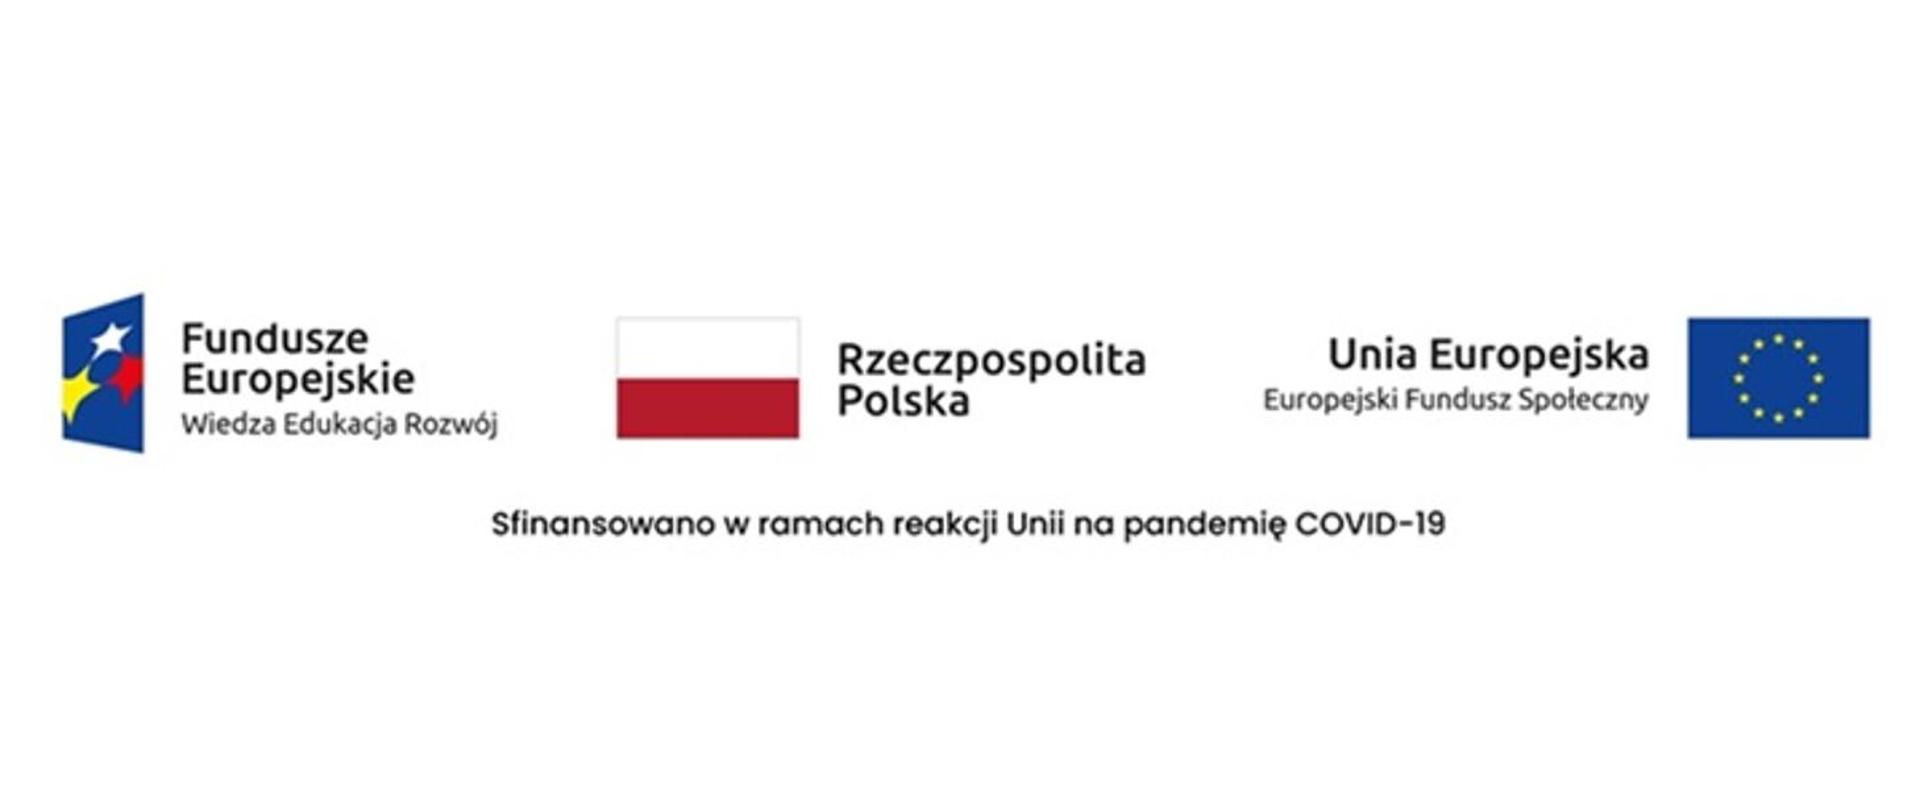 Baner z oznaczeniem funduszy europejskich, flagi RP i UE